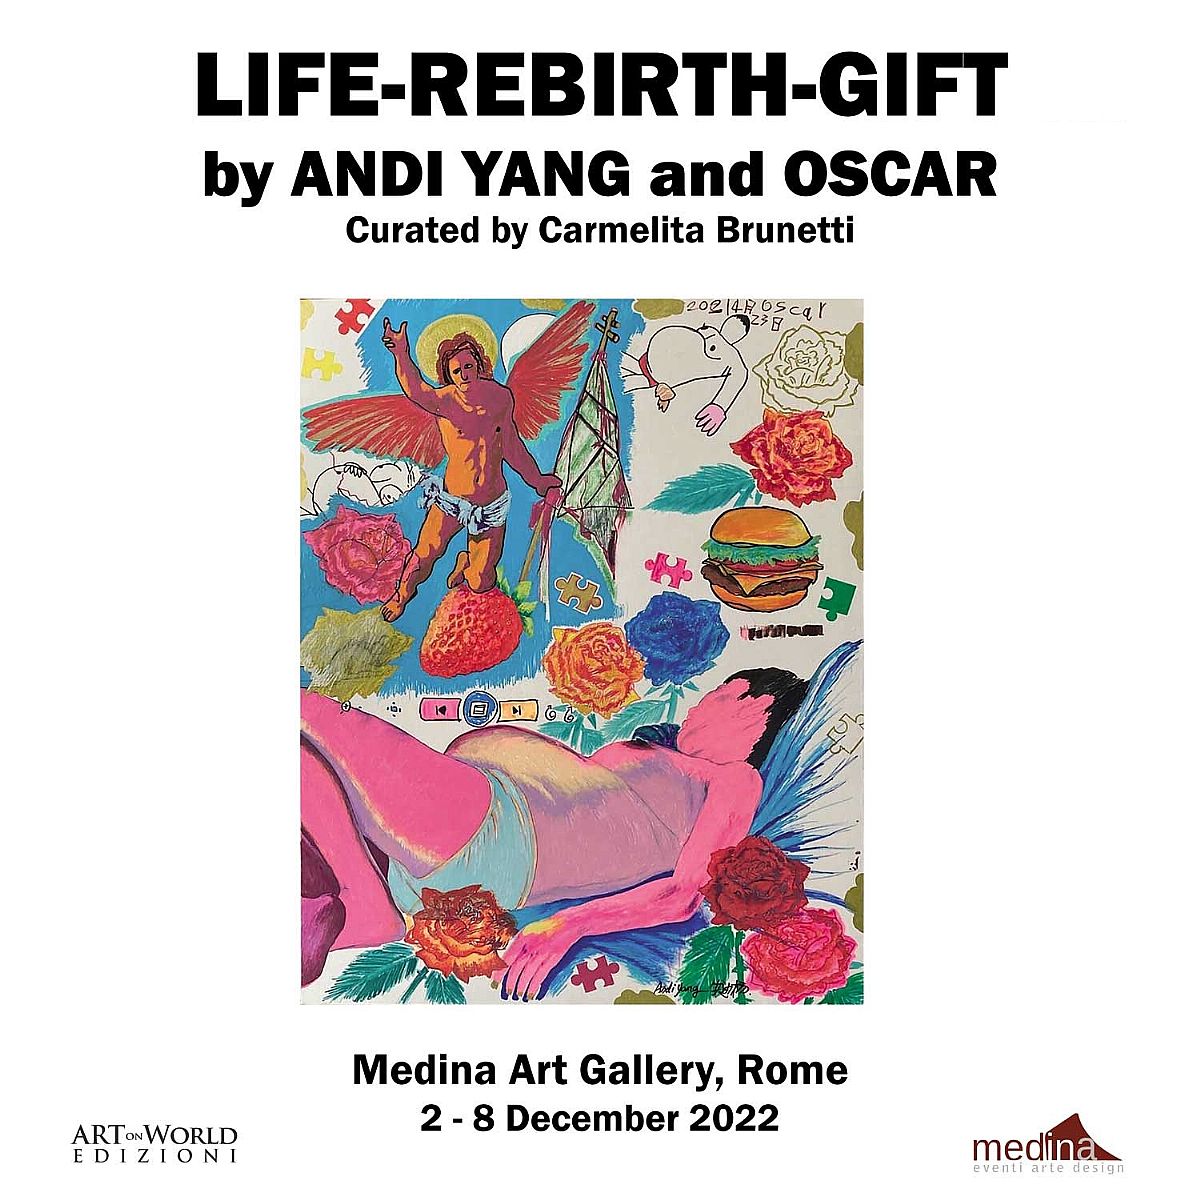 LIFE-REBIRTH-GIFT by ANDI YANG and OSCAR